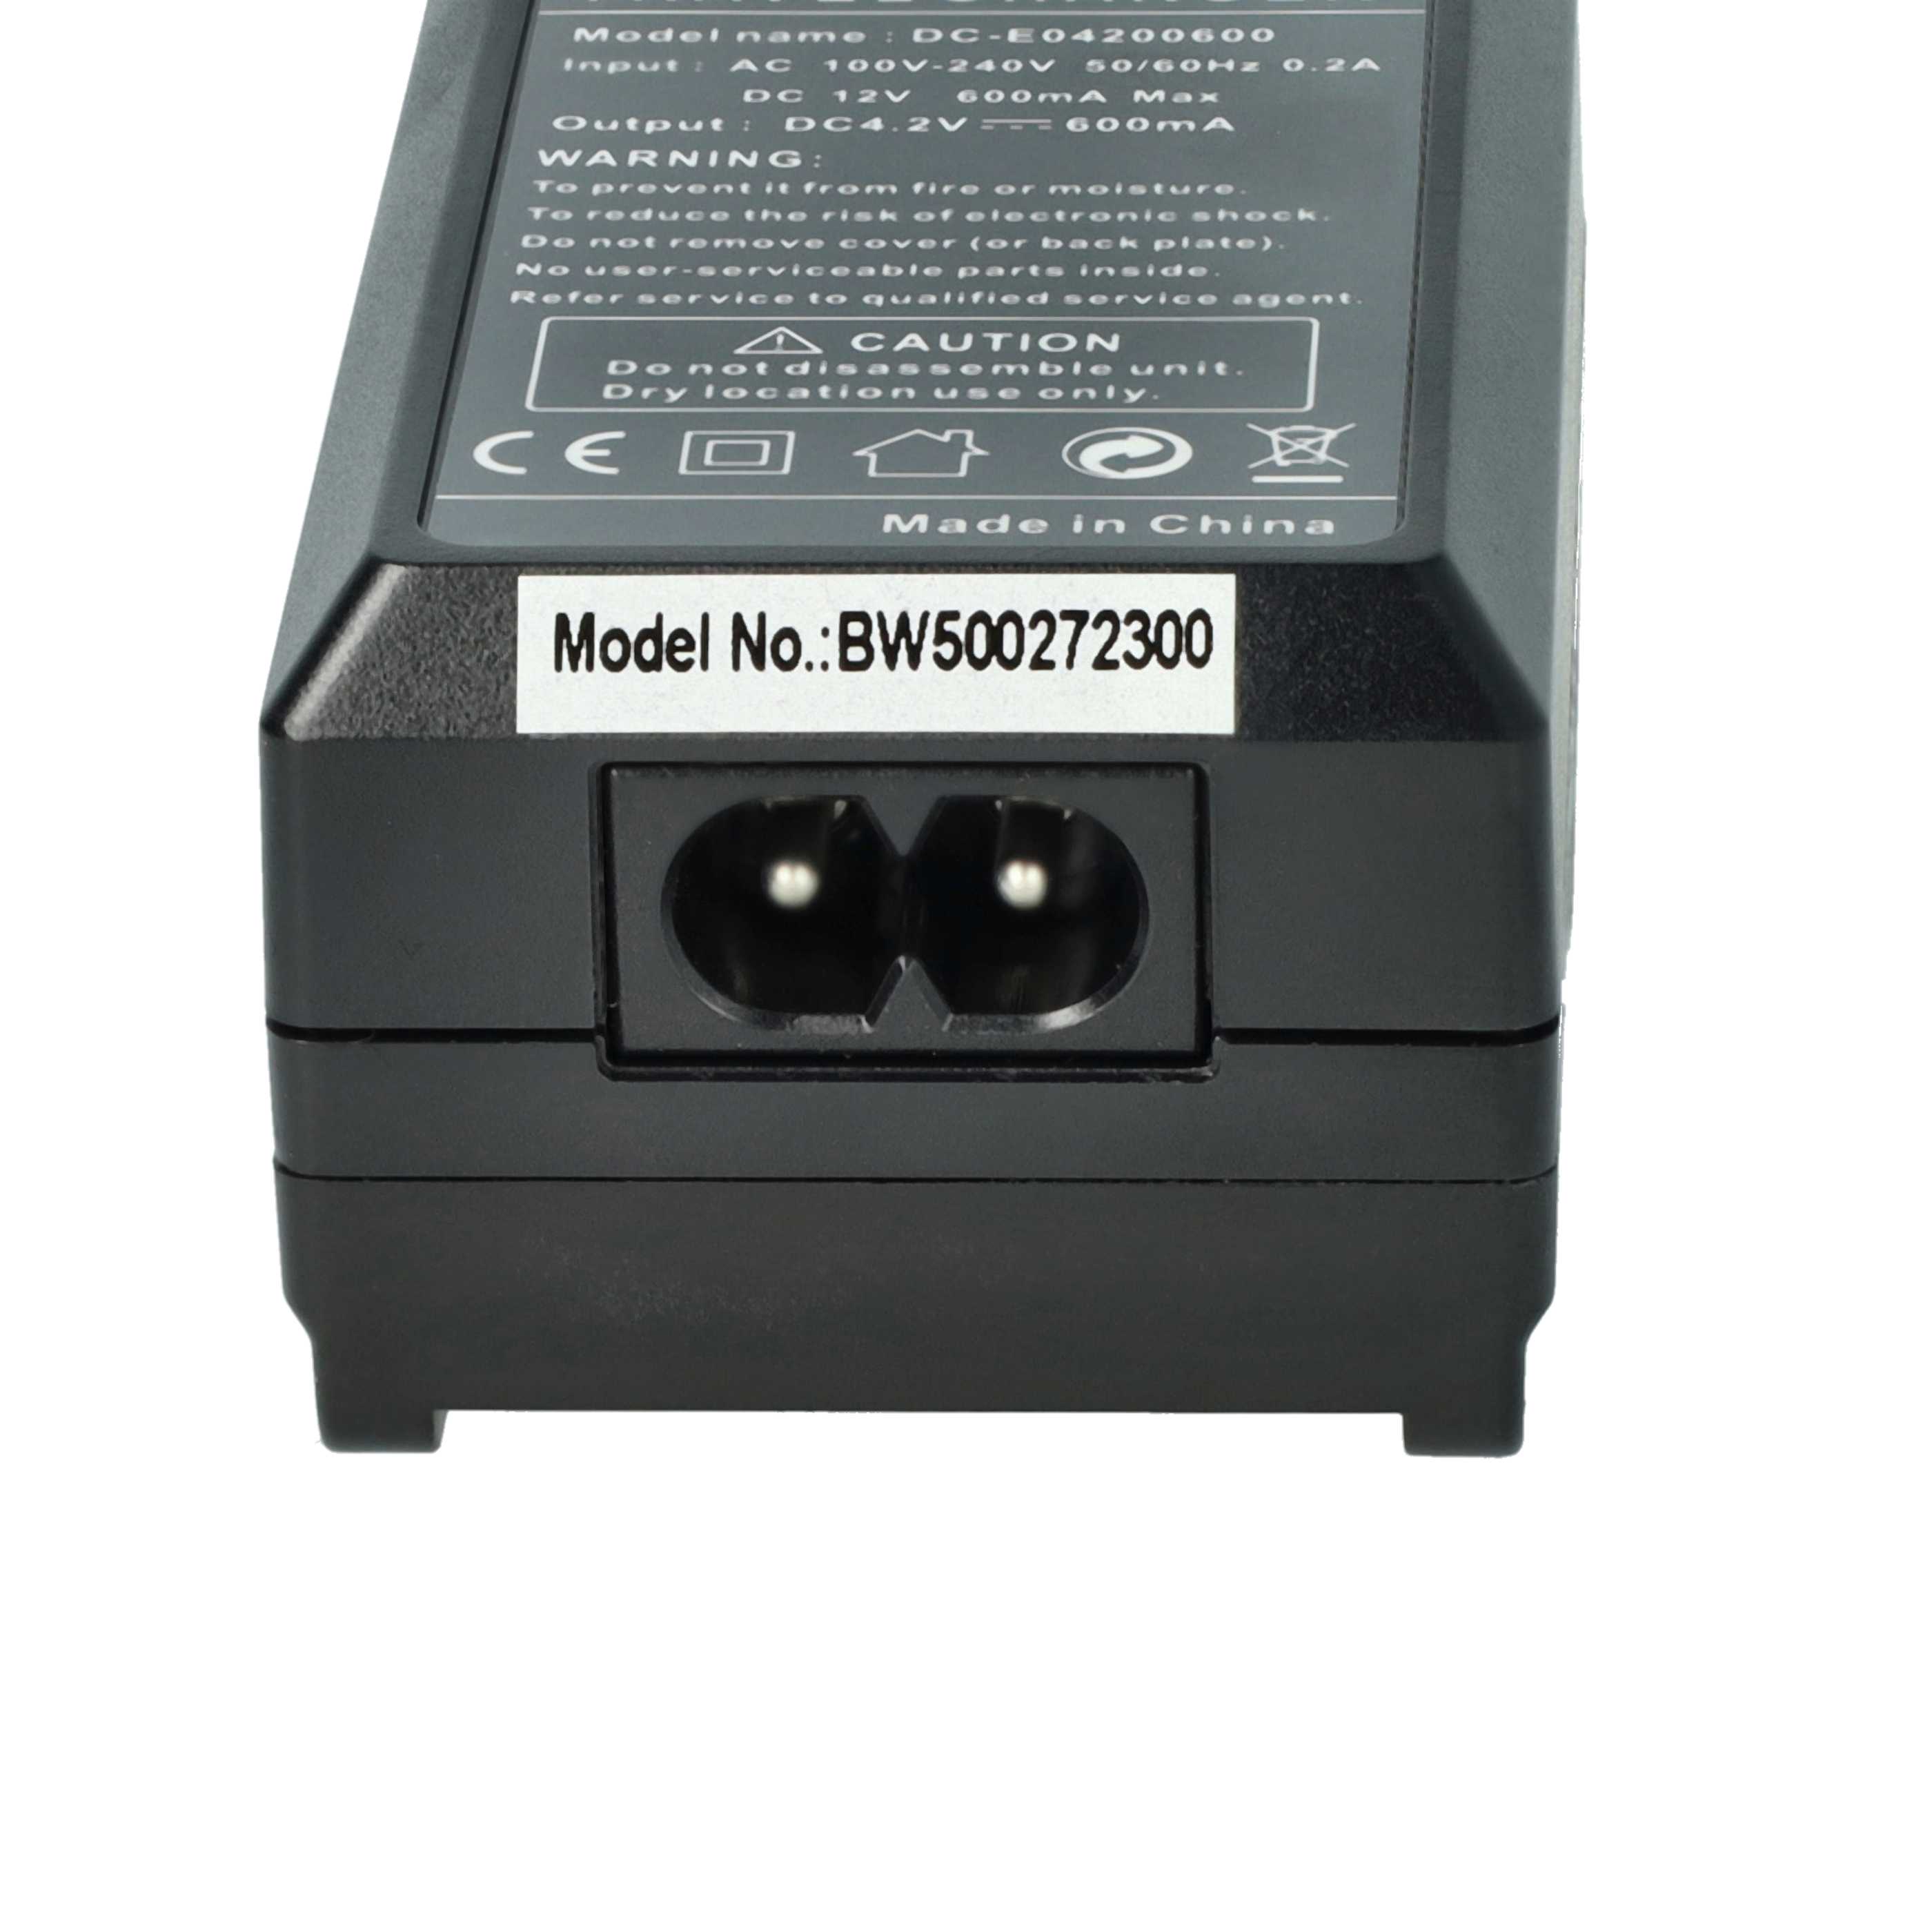 Caricabatterie + adattatore da auto per fotocamera Coolpix - 0,6A 4,2V 88,5cm